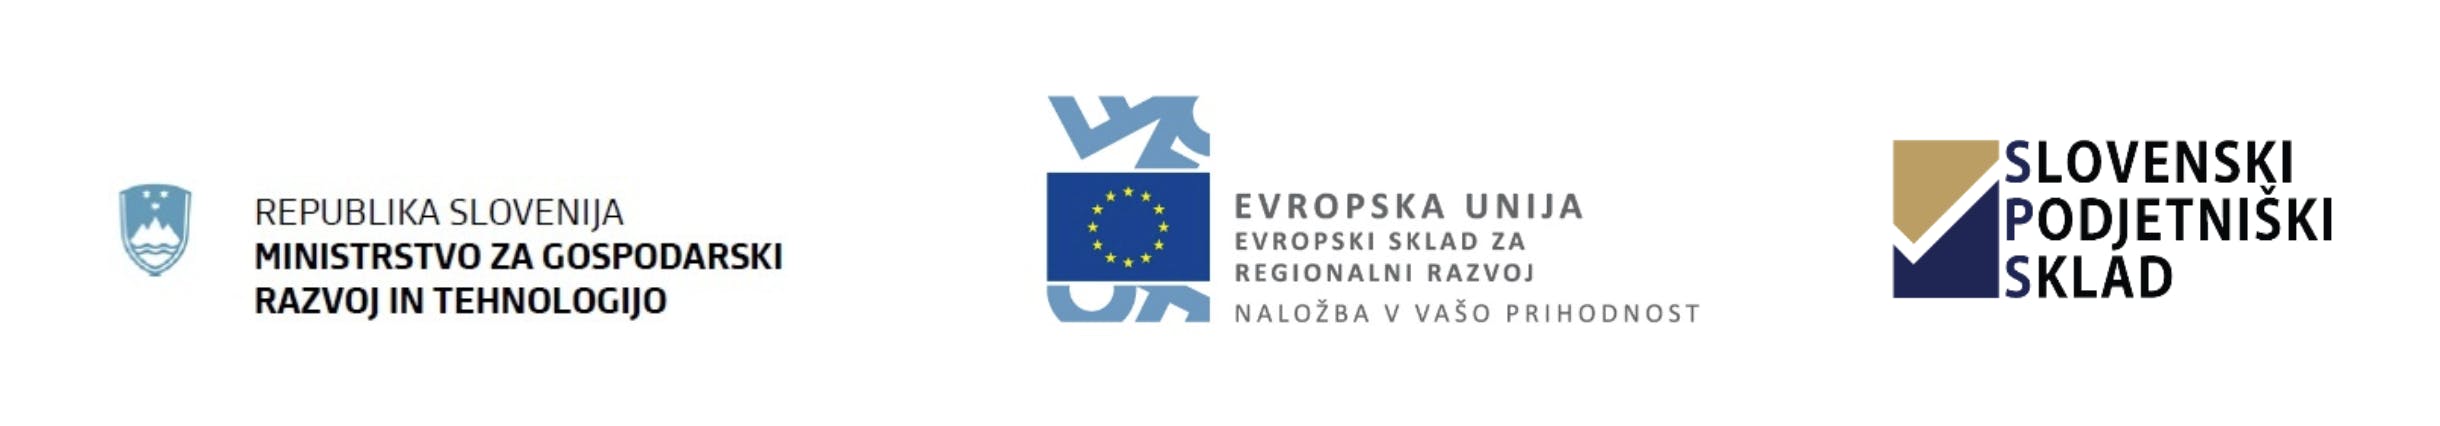 Logotip ministrstva za gospodarski razvoj in tehnologijo, logotip evropskega sklada za regionalni razvoj in logotip slovenskega podjetniškega sklada